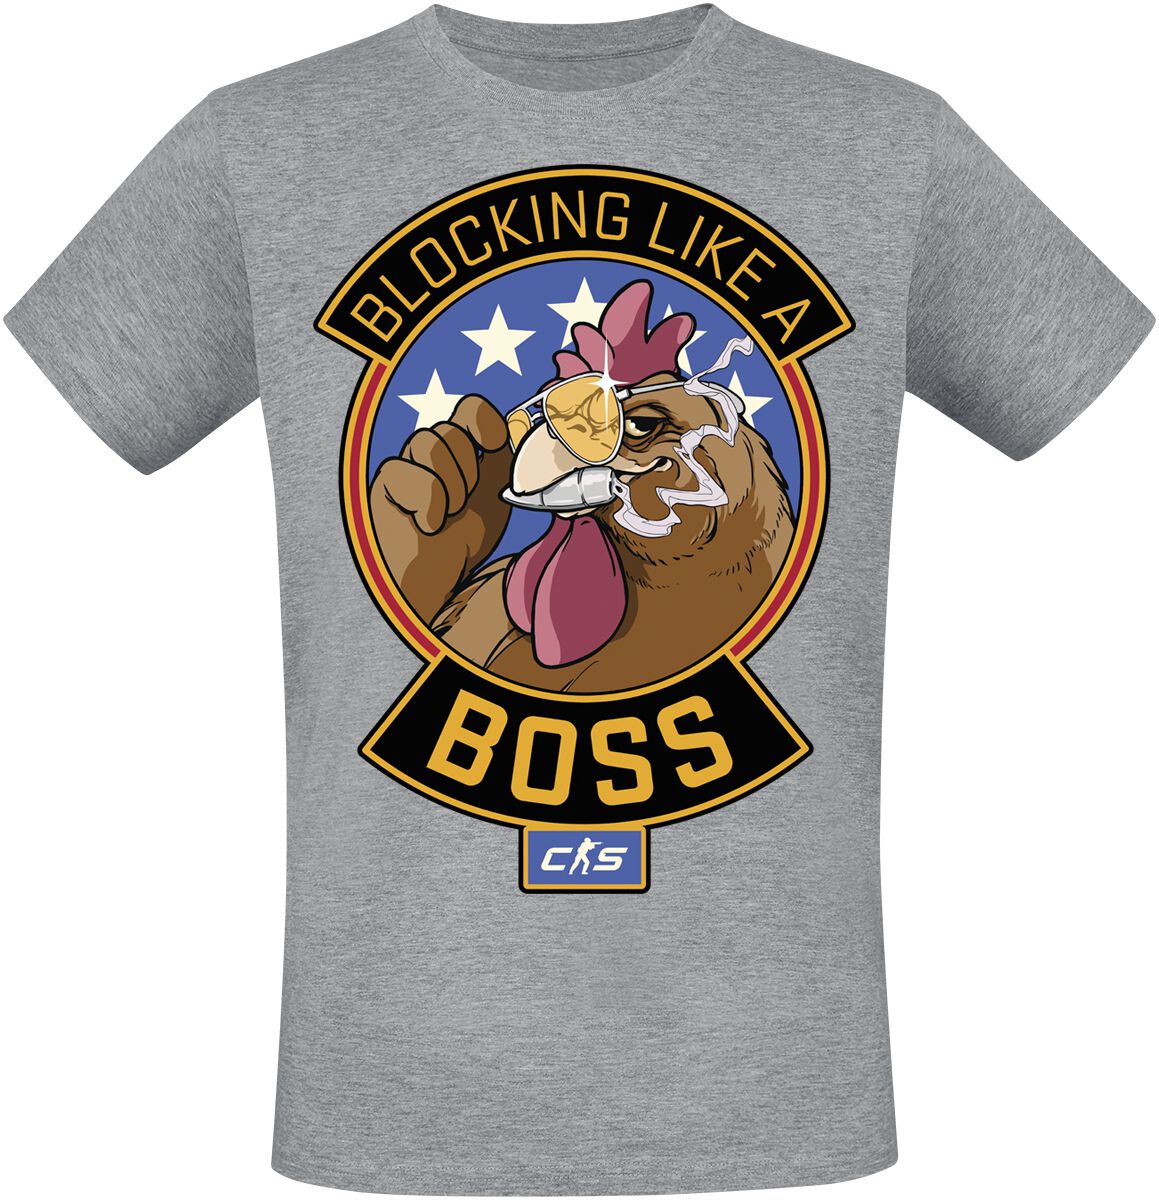 Counter-Strike - Gaming T-Shirt - 2 - Blocking Like A Boss - S bis XXL - für Männer - Größe L - grau meliert  - EMP exklusives Merchandise!